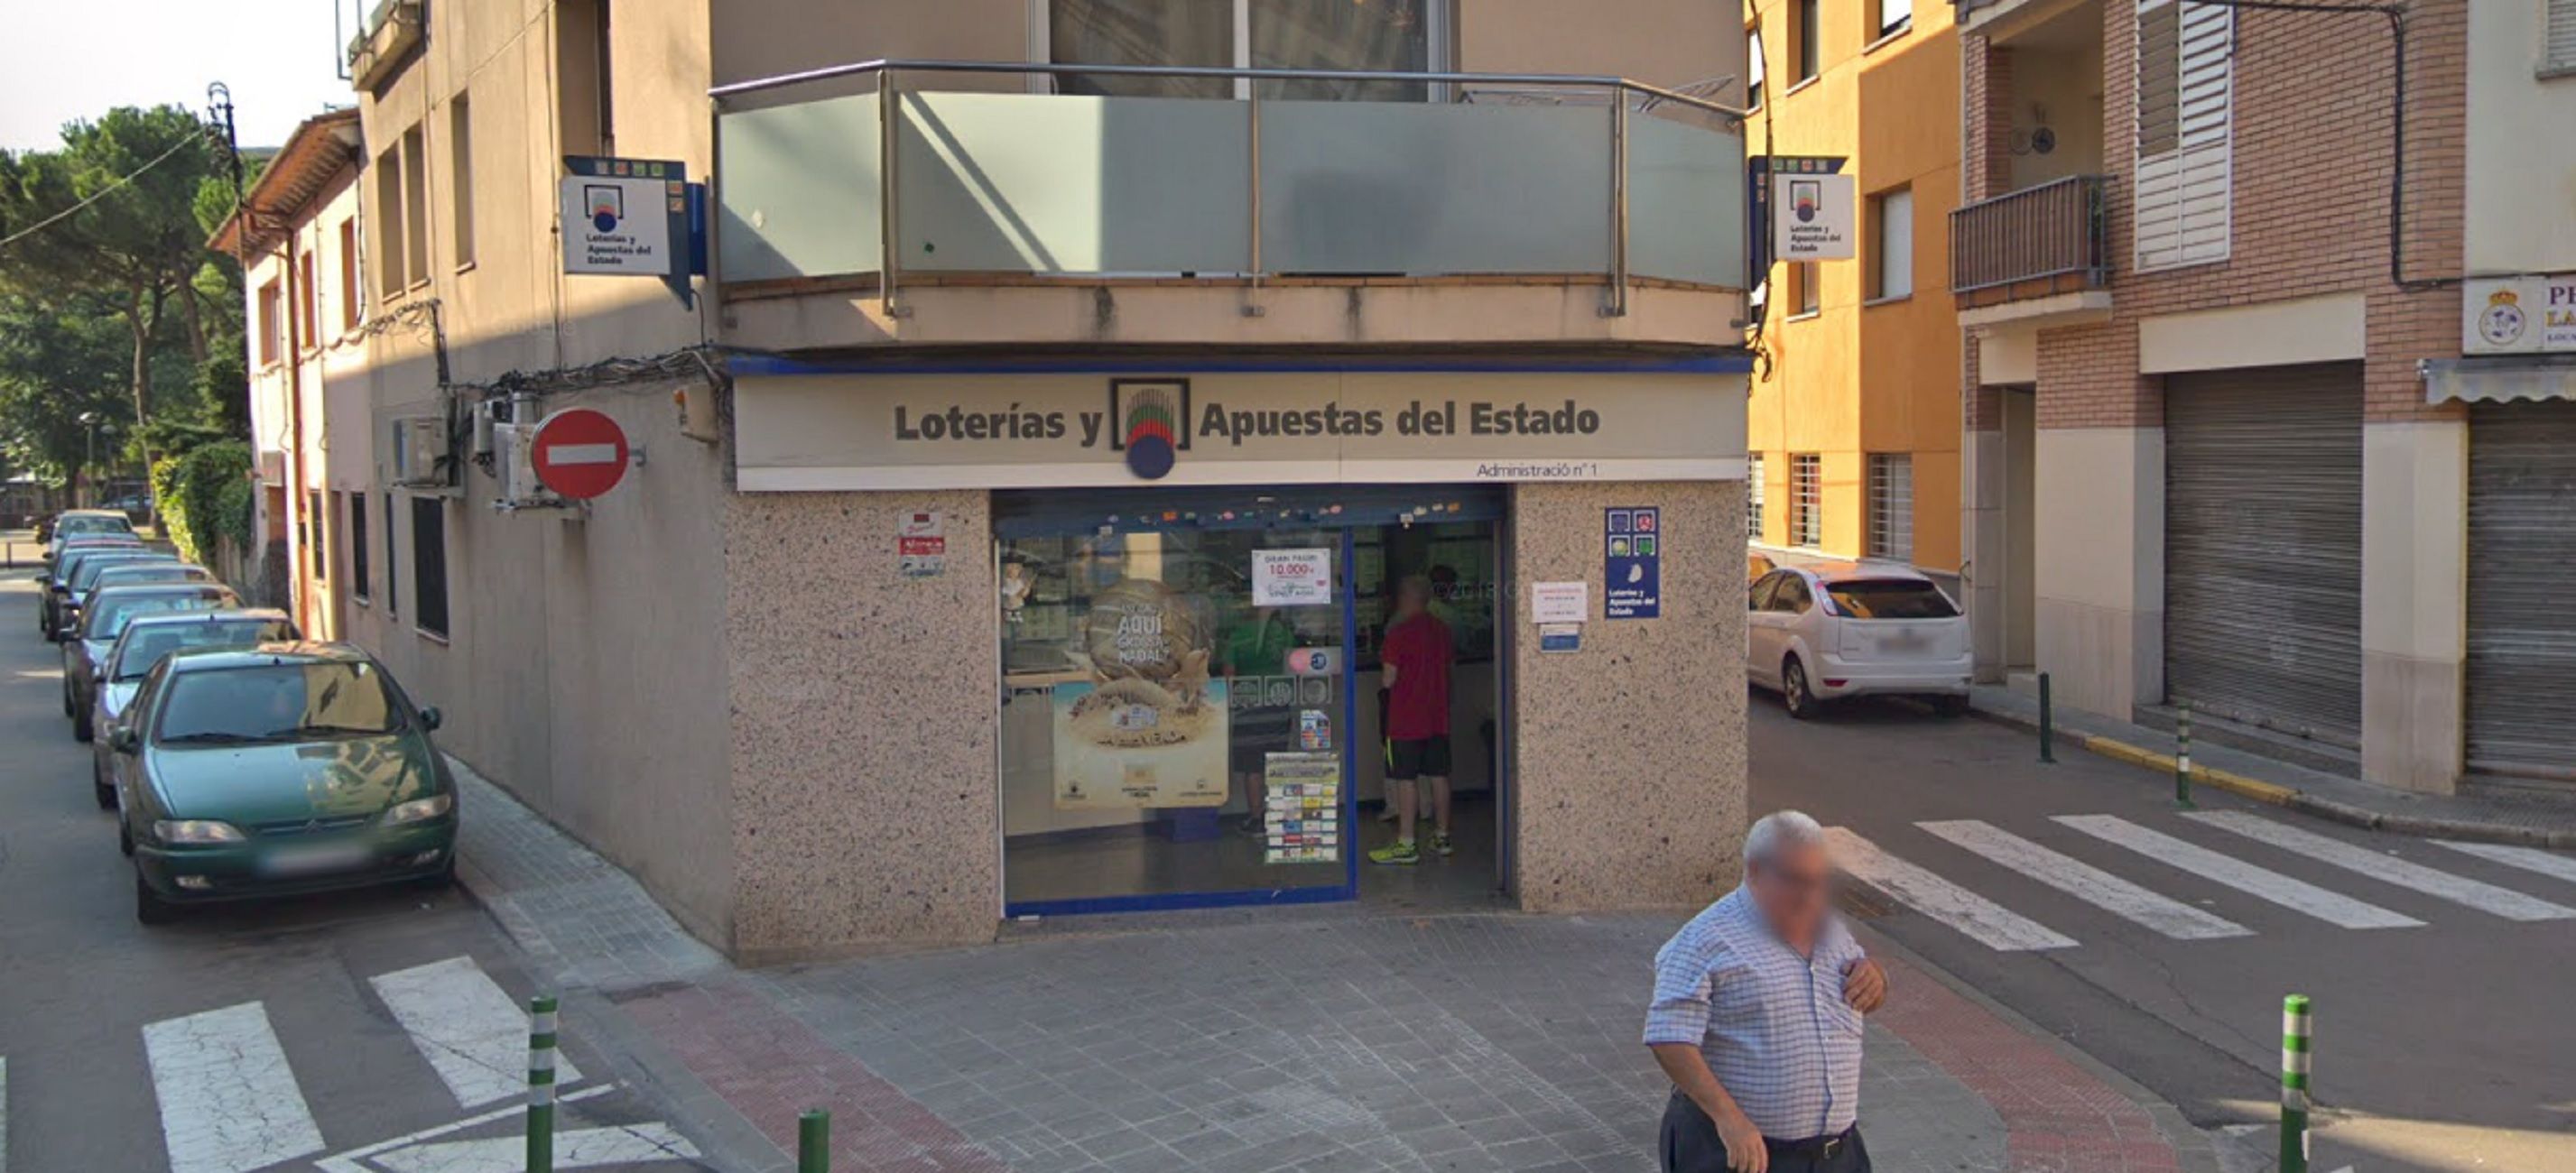 Administración de loterías número 1 de Santa Perpètua de Mogoda (Barcelona) / Loterías y Apuestas del Estado